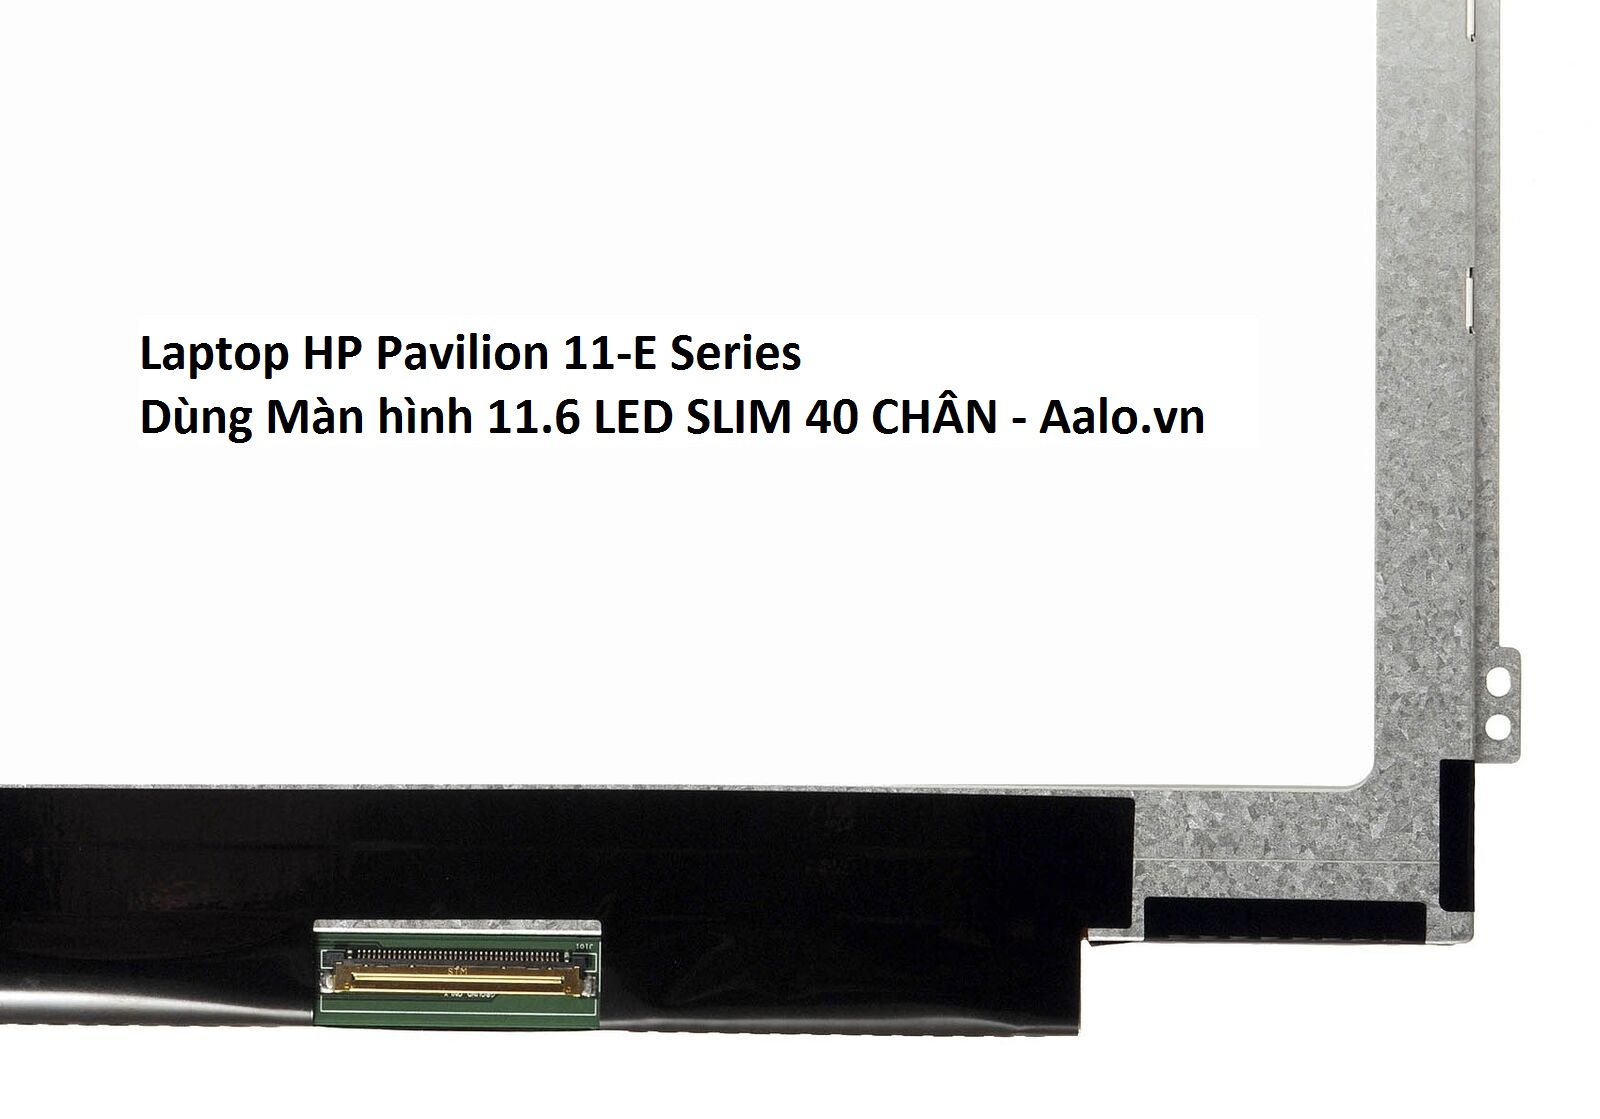 Màn hình Laptop HP Pavilion 11-E Series - Aalo.vn